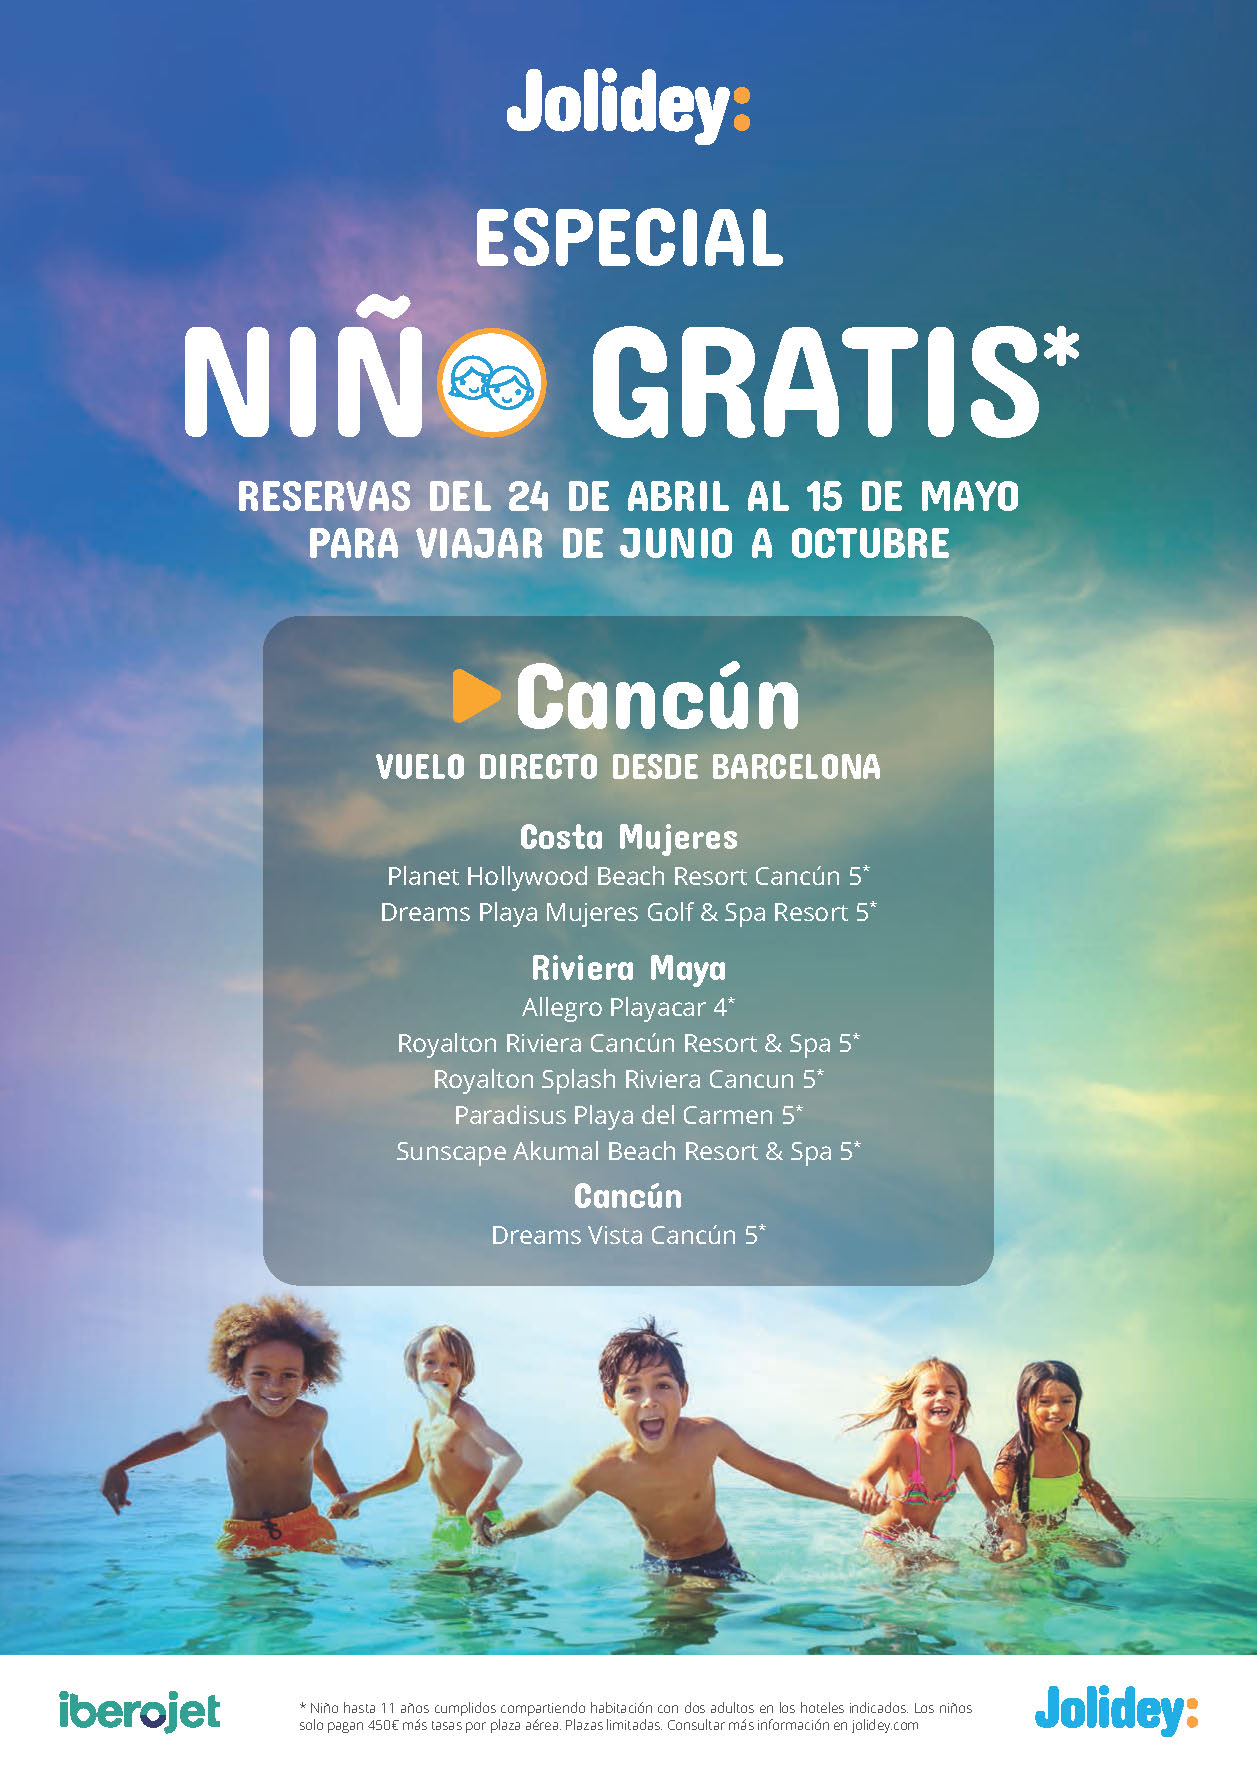 Oferta Jolidey Niños Gratis 2023 Cancun Riviera Maya Costa Mujeres 9 dias Todo Incluido salidas en vuelo directo desde Barcelona